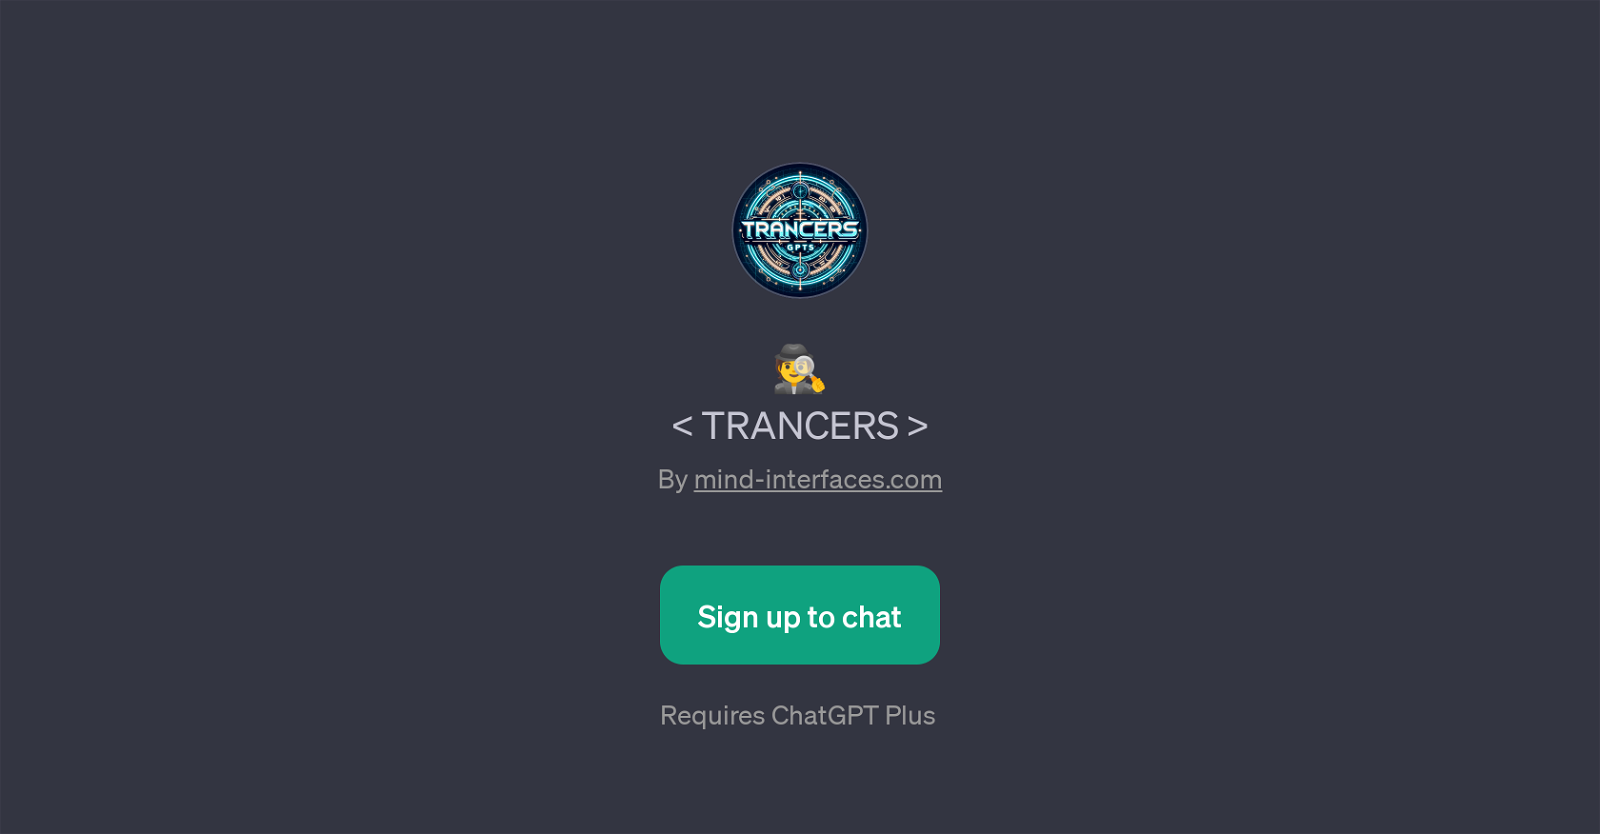 TRANCERS website